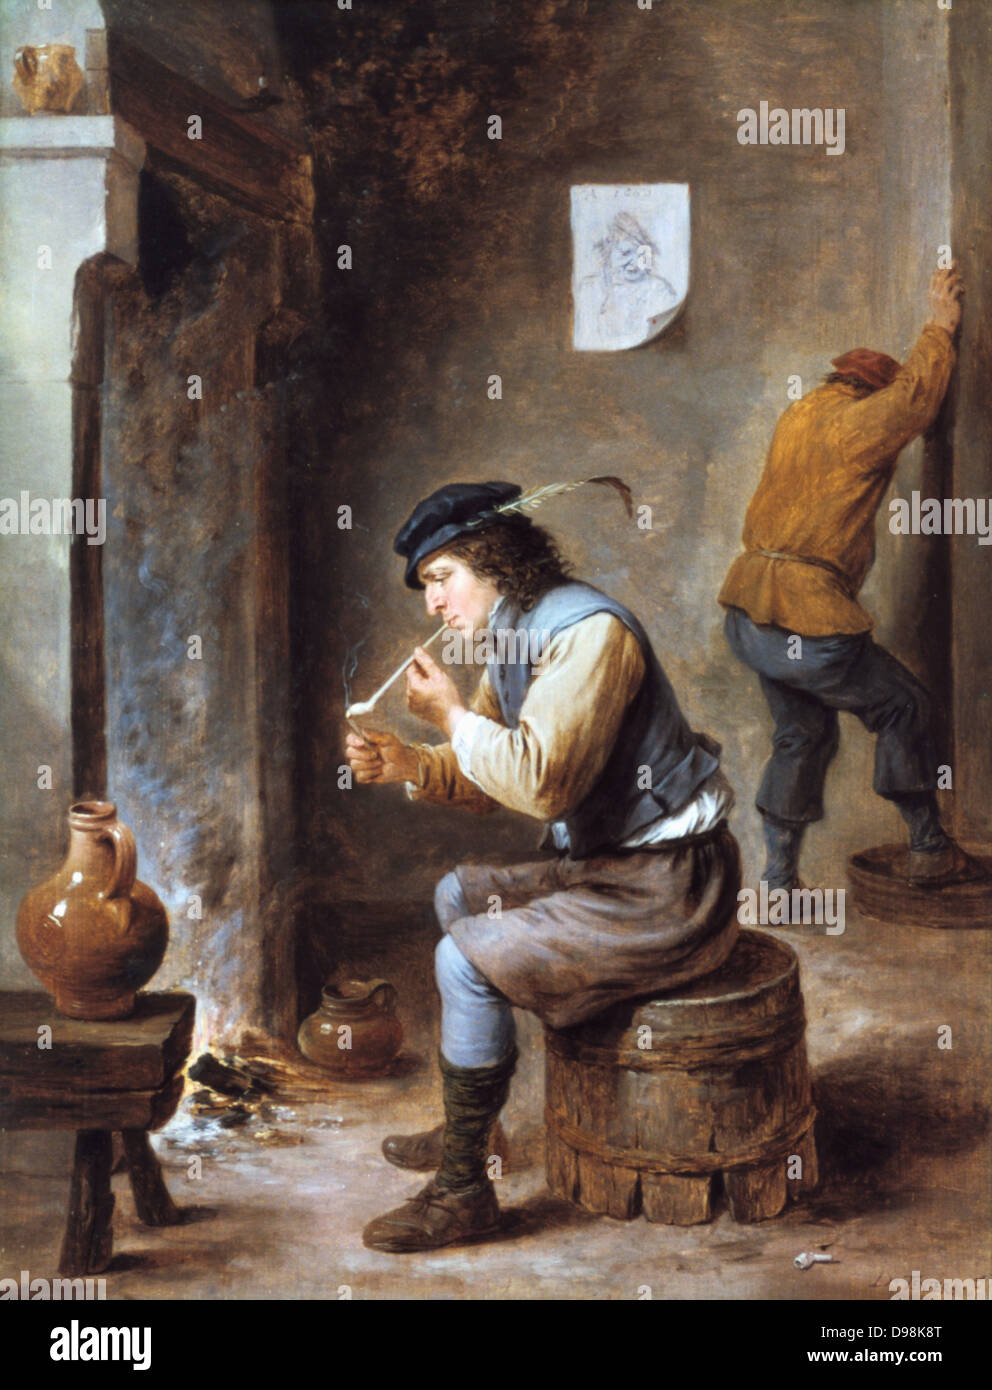 Raucher vor einem Kamin. Malerei von David Teniers der Jüngere (1610-1690) flämischen Künstler. Mann auf umgedrehten Barrel vor einem Feuer sitzt Beleuchtung eine Tonpfeife. Bauer häusliche Interieur Krug Keramik Tabak Stockfoto